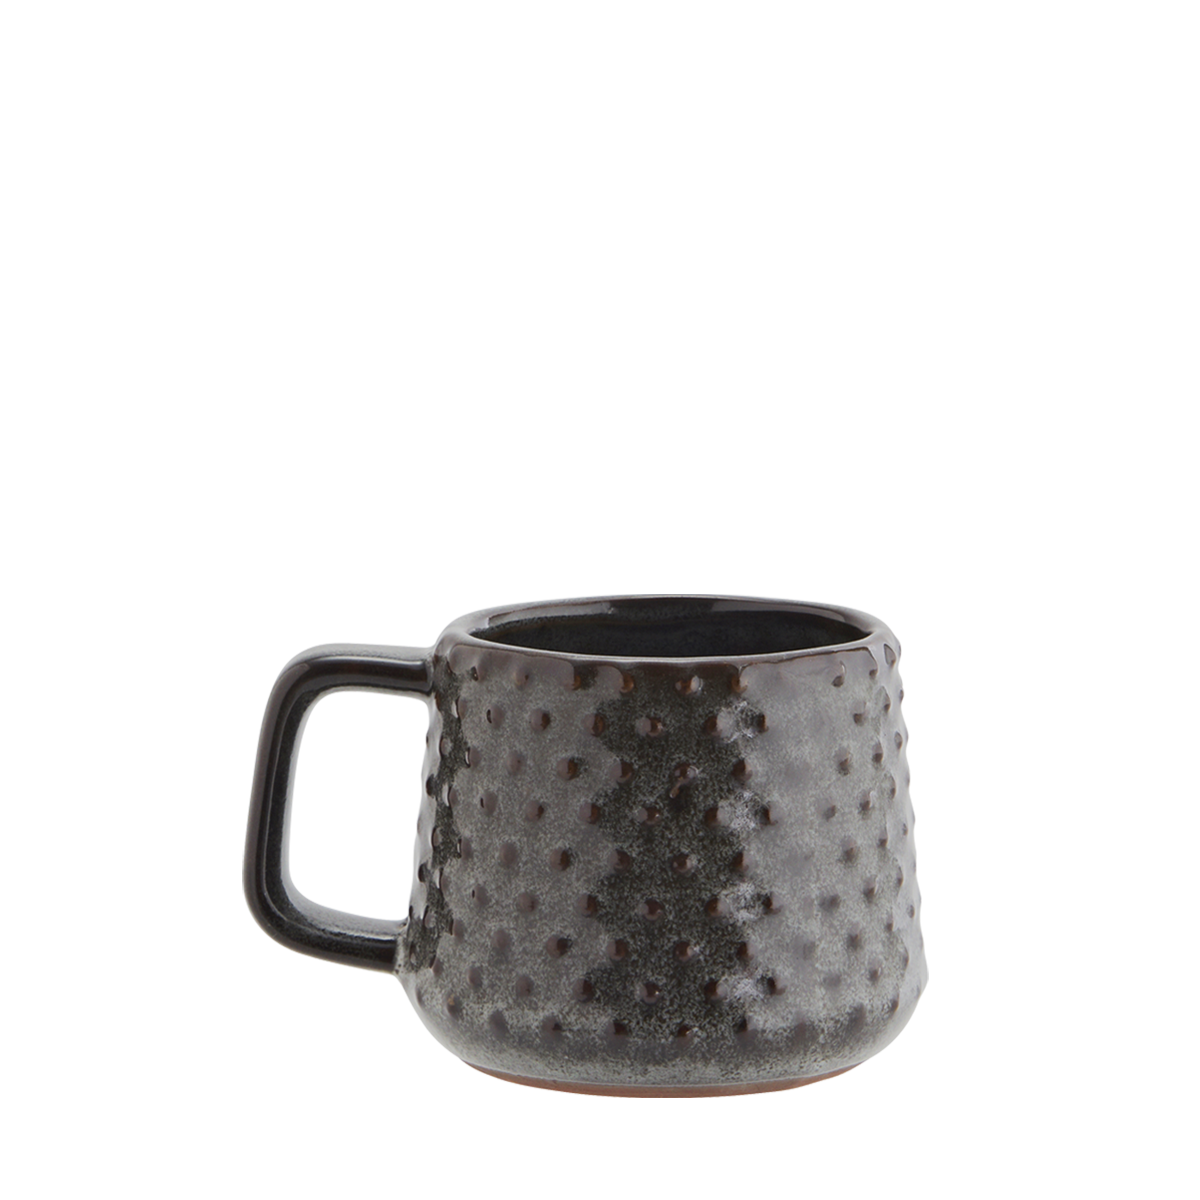 Stoneware mug w/ dots